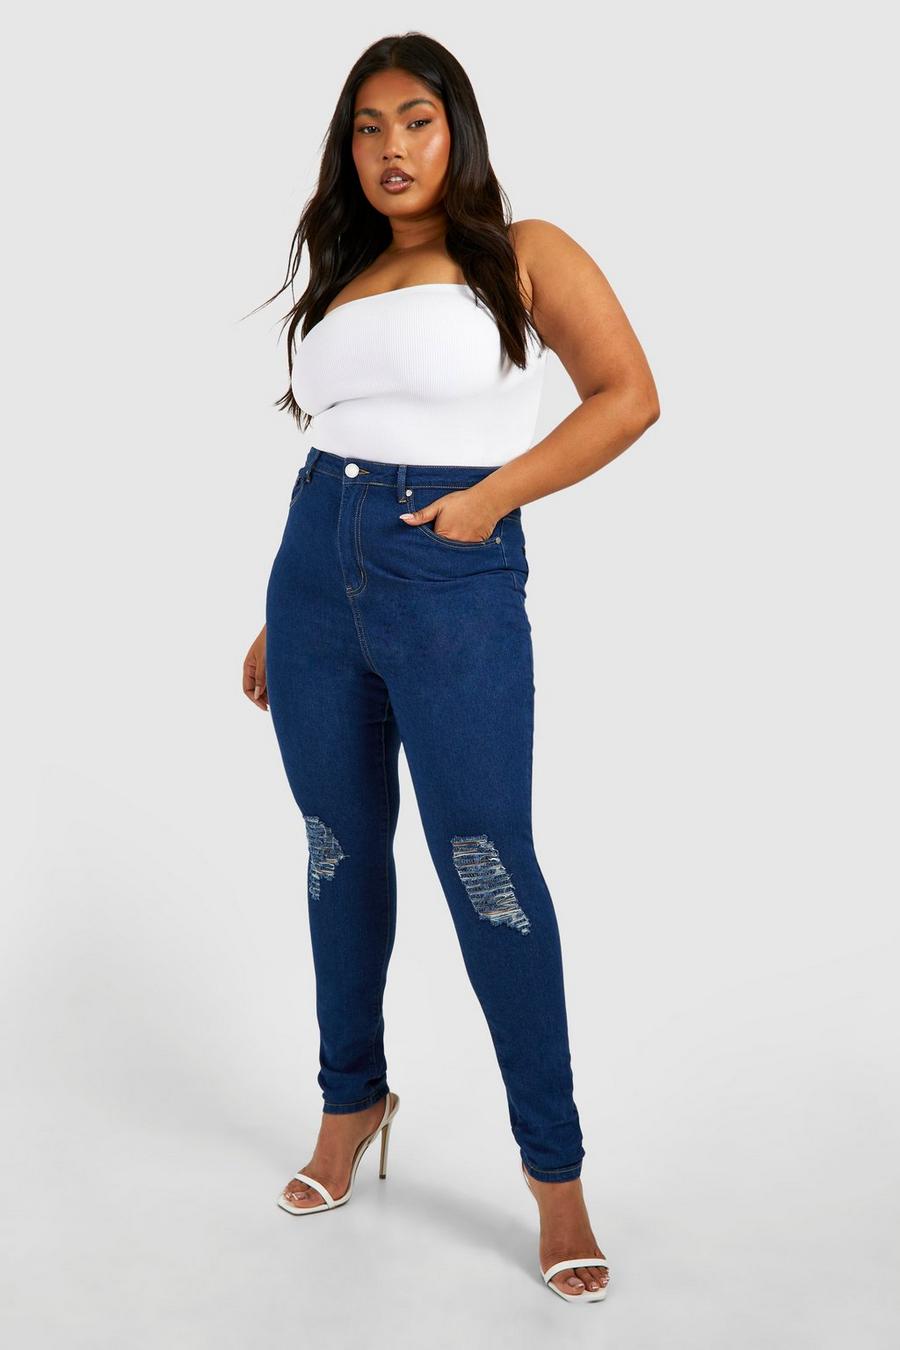 כחול ביניים סקיני ג'ינס high waist עם קרעים, מידות גדולות